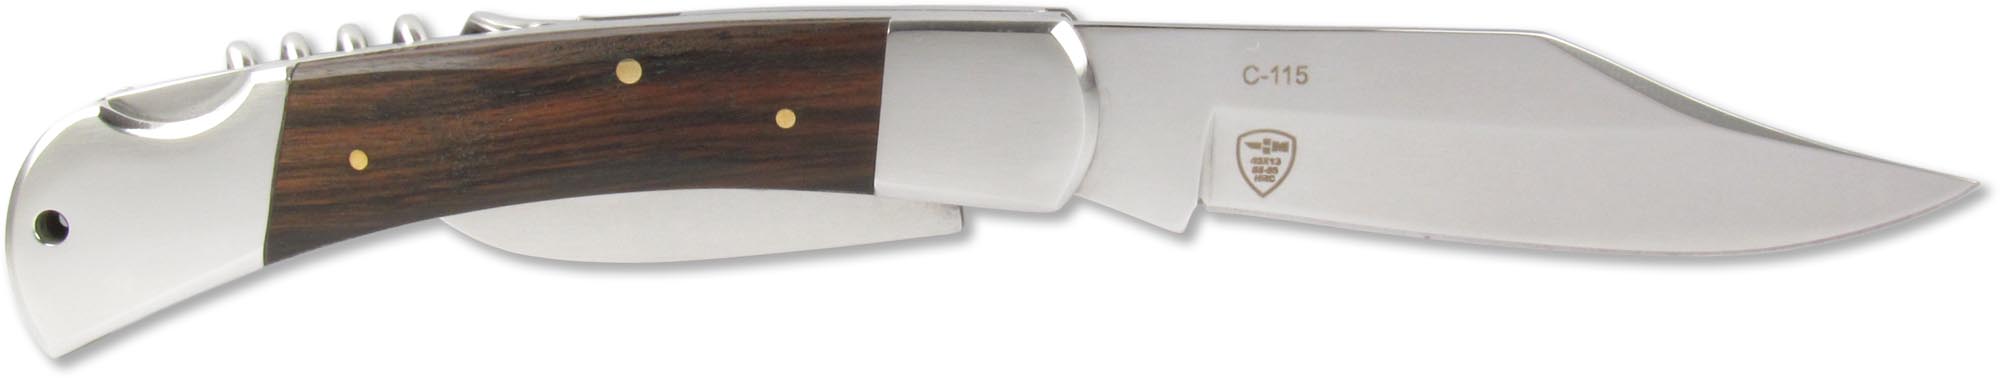 Нож складной Чёткий расклад C-115